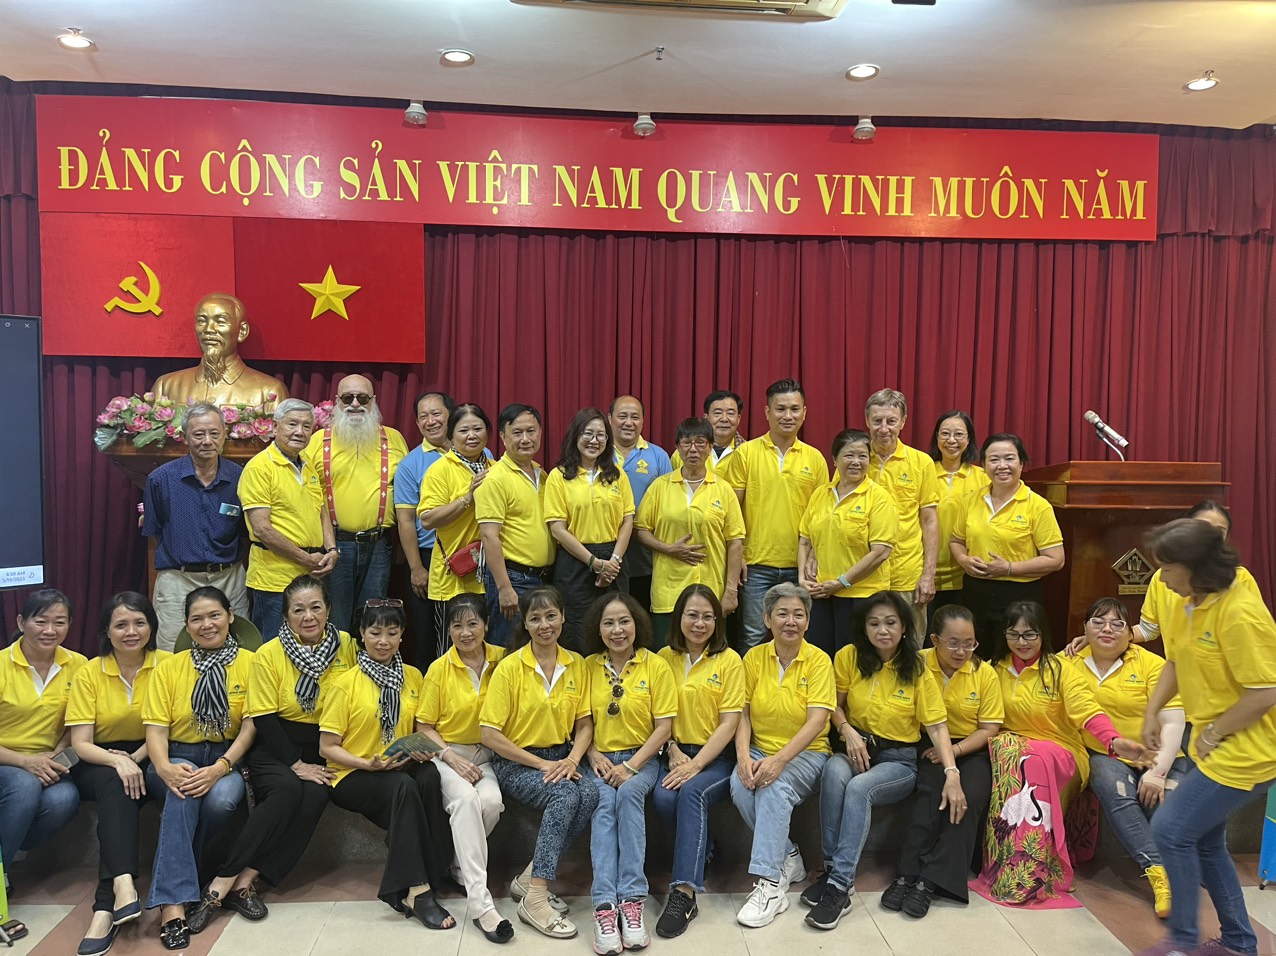 MGM đưa đón Đoàn đại biểu người Việt Nam ở nước ngoài trồng cây nhân ngày sinh của Bác Hồ